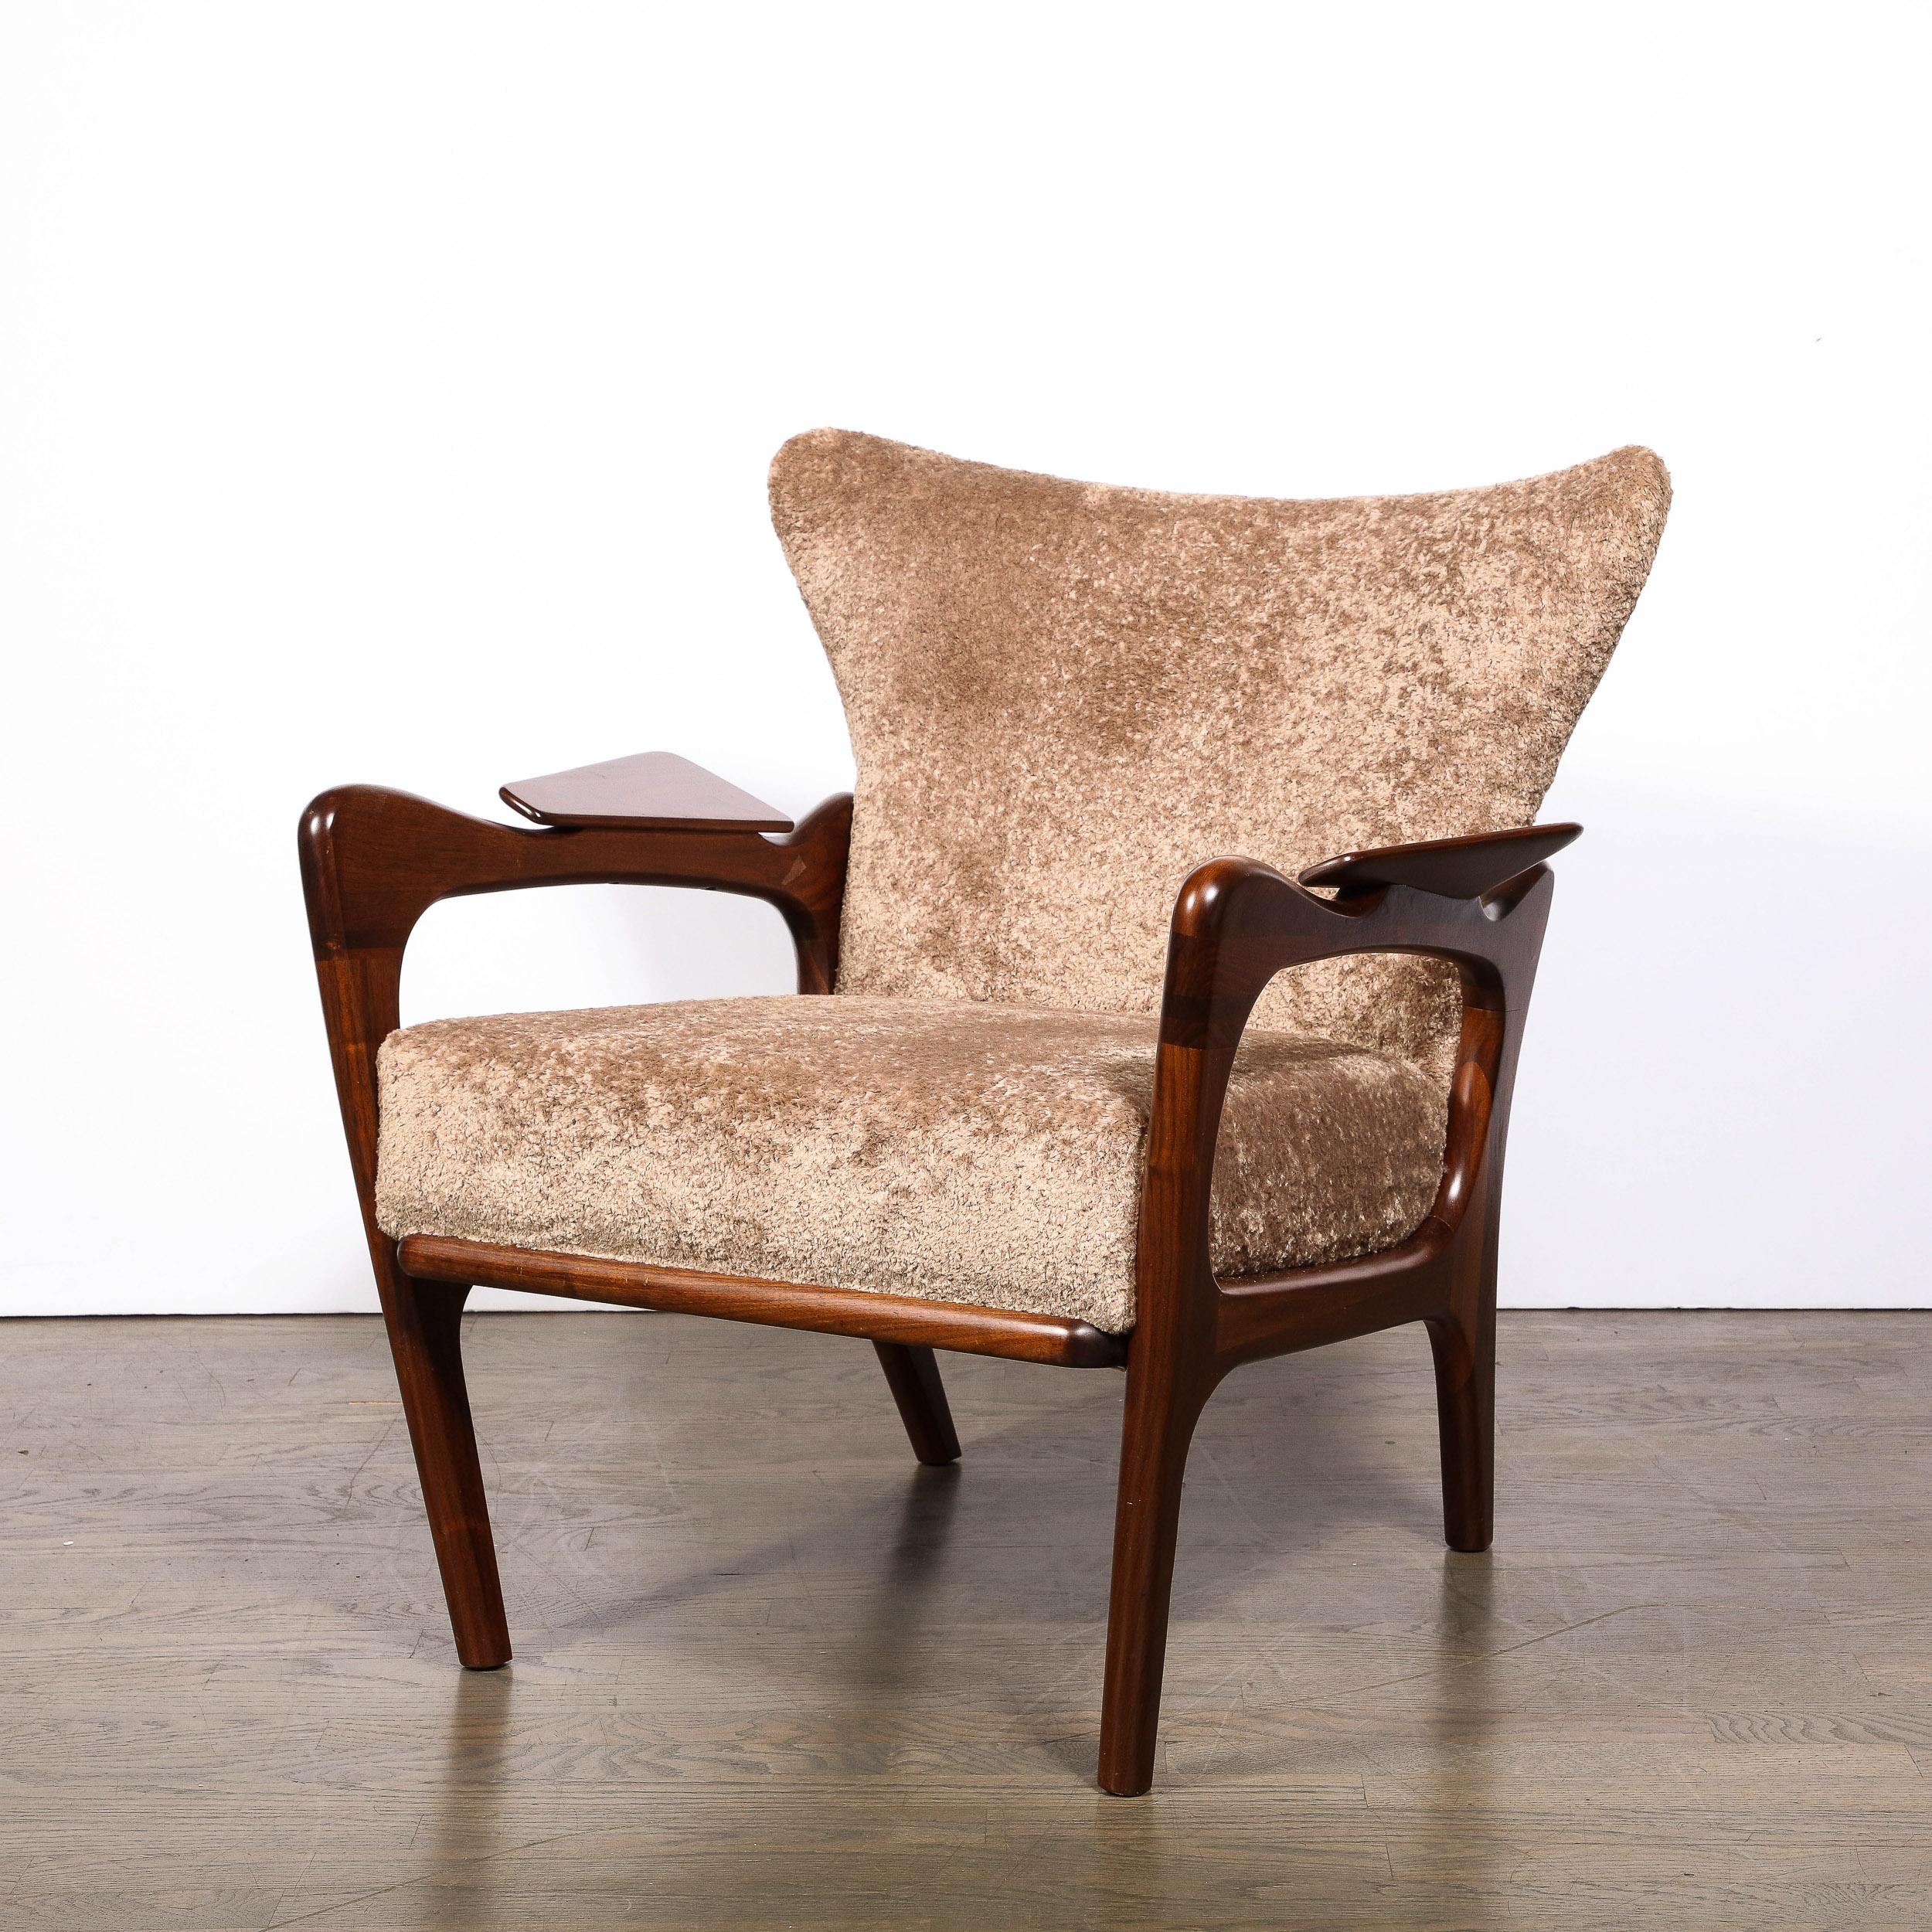 Dieser ikonische Mid-Century Modern 2291-C Lounge Chair wurde von dem legendären Designer Adrian Pearsall um 1960 in den USA entworfen. Er zeichnet sich durch subtil kantige Vorderbeine und dramatisch gewölbte Hinterbeine aus; eine skulpturale